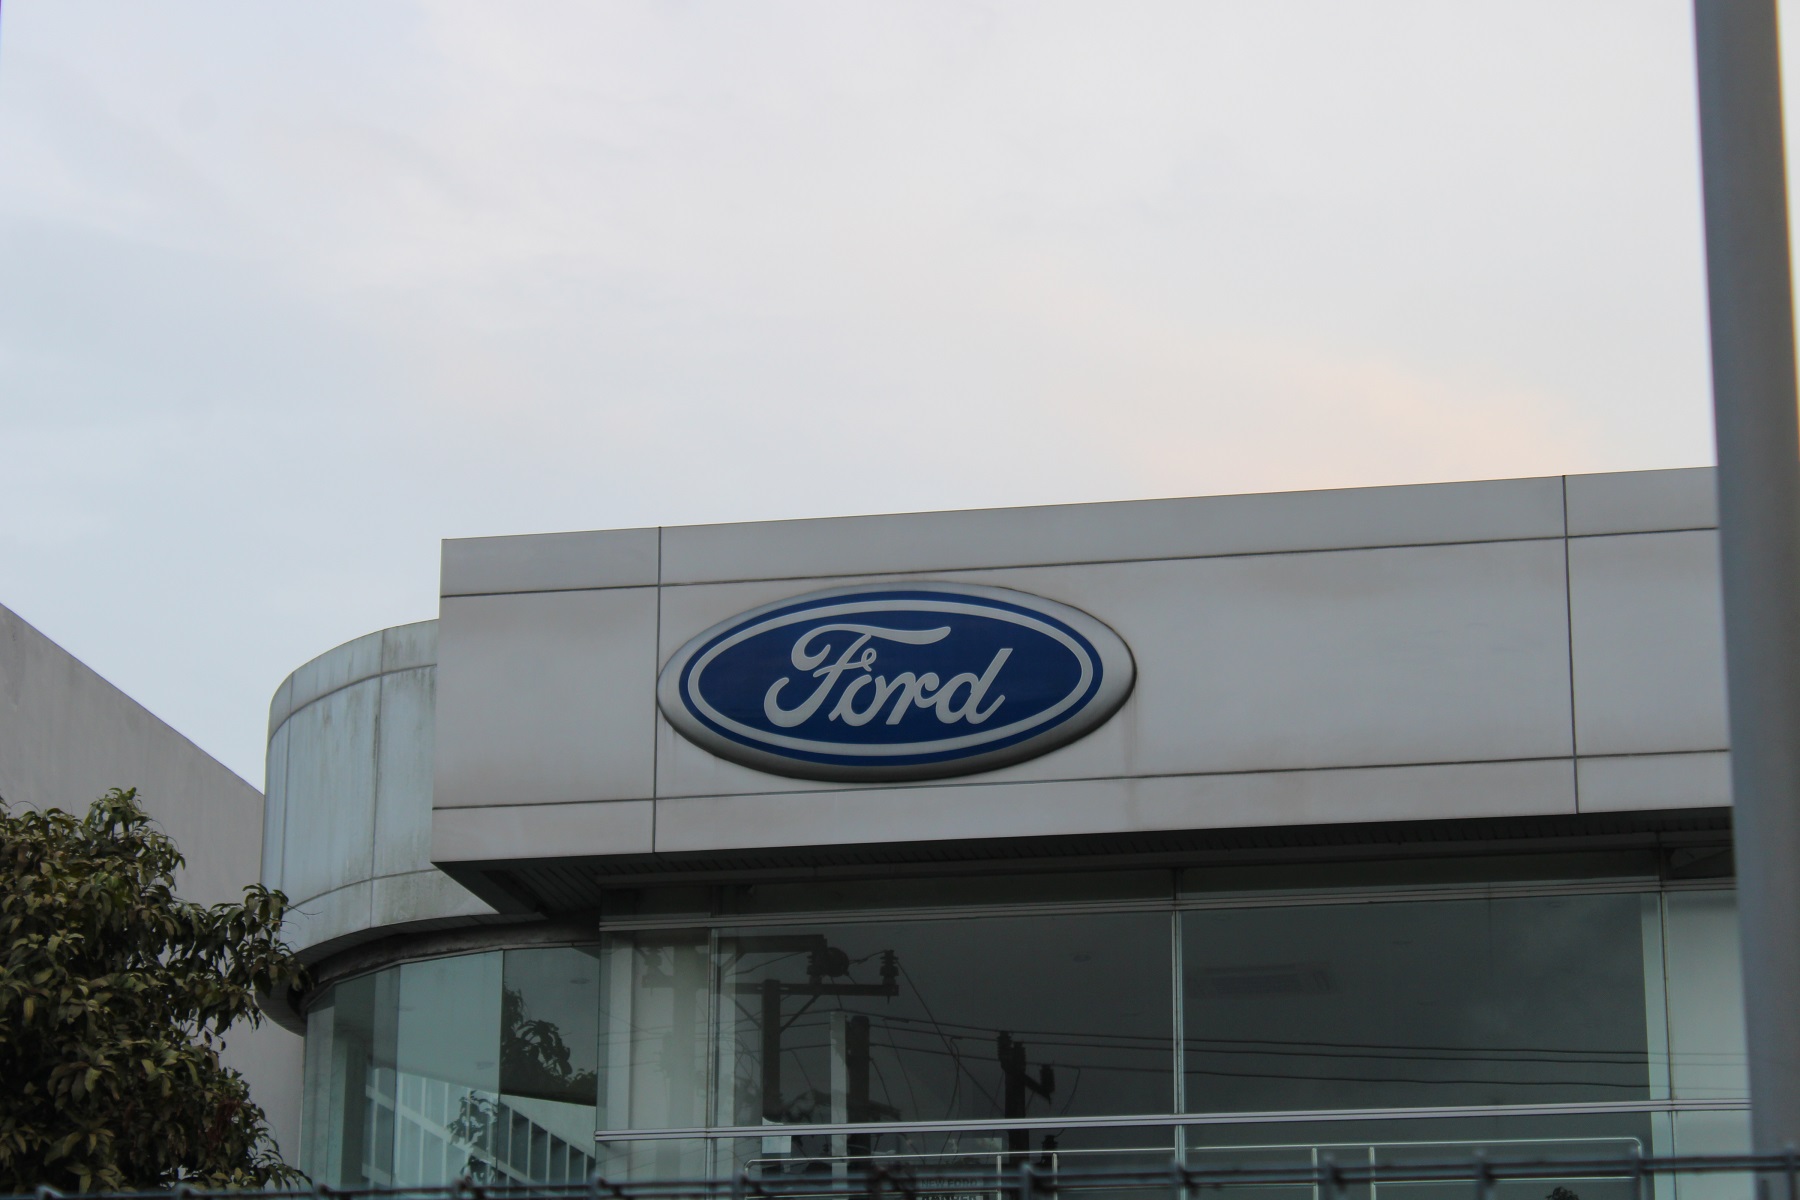 Quais carros da Ford seguirão no mercado? Linha será renovada?